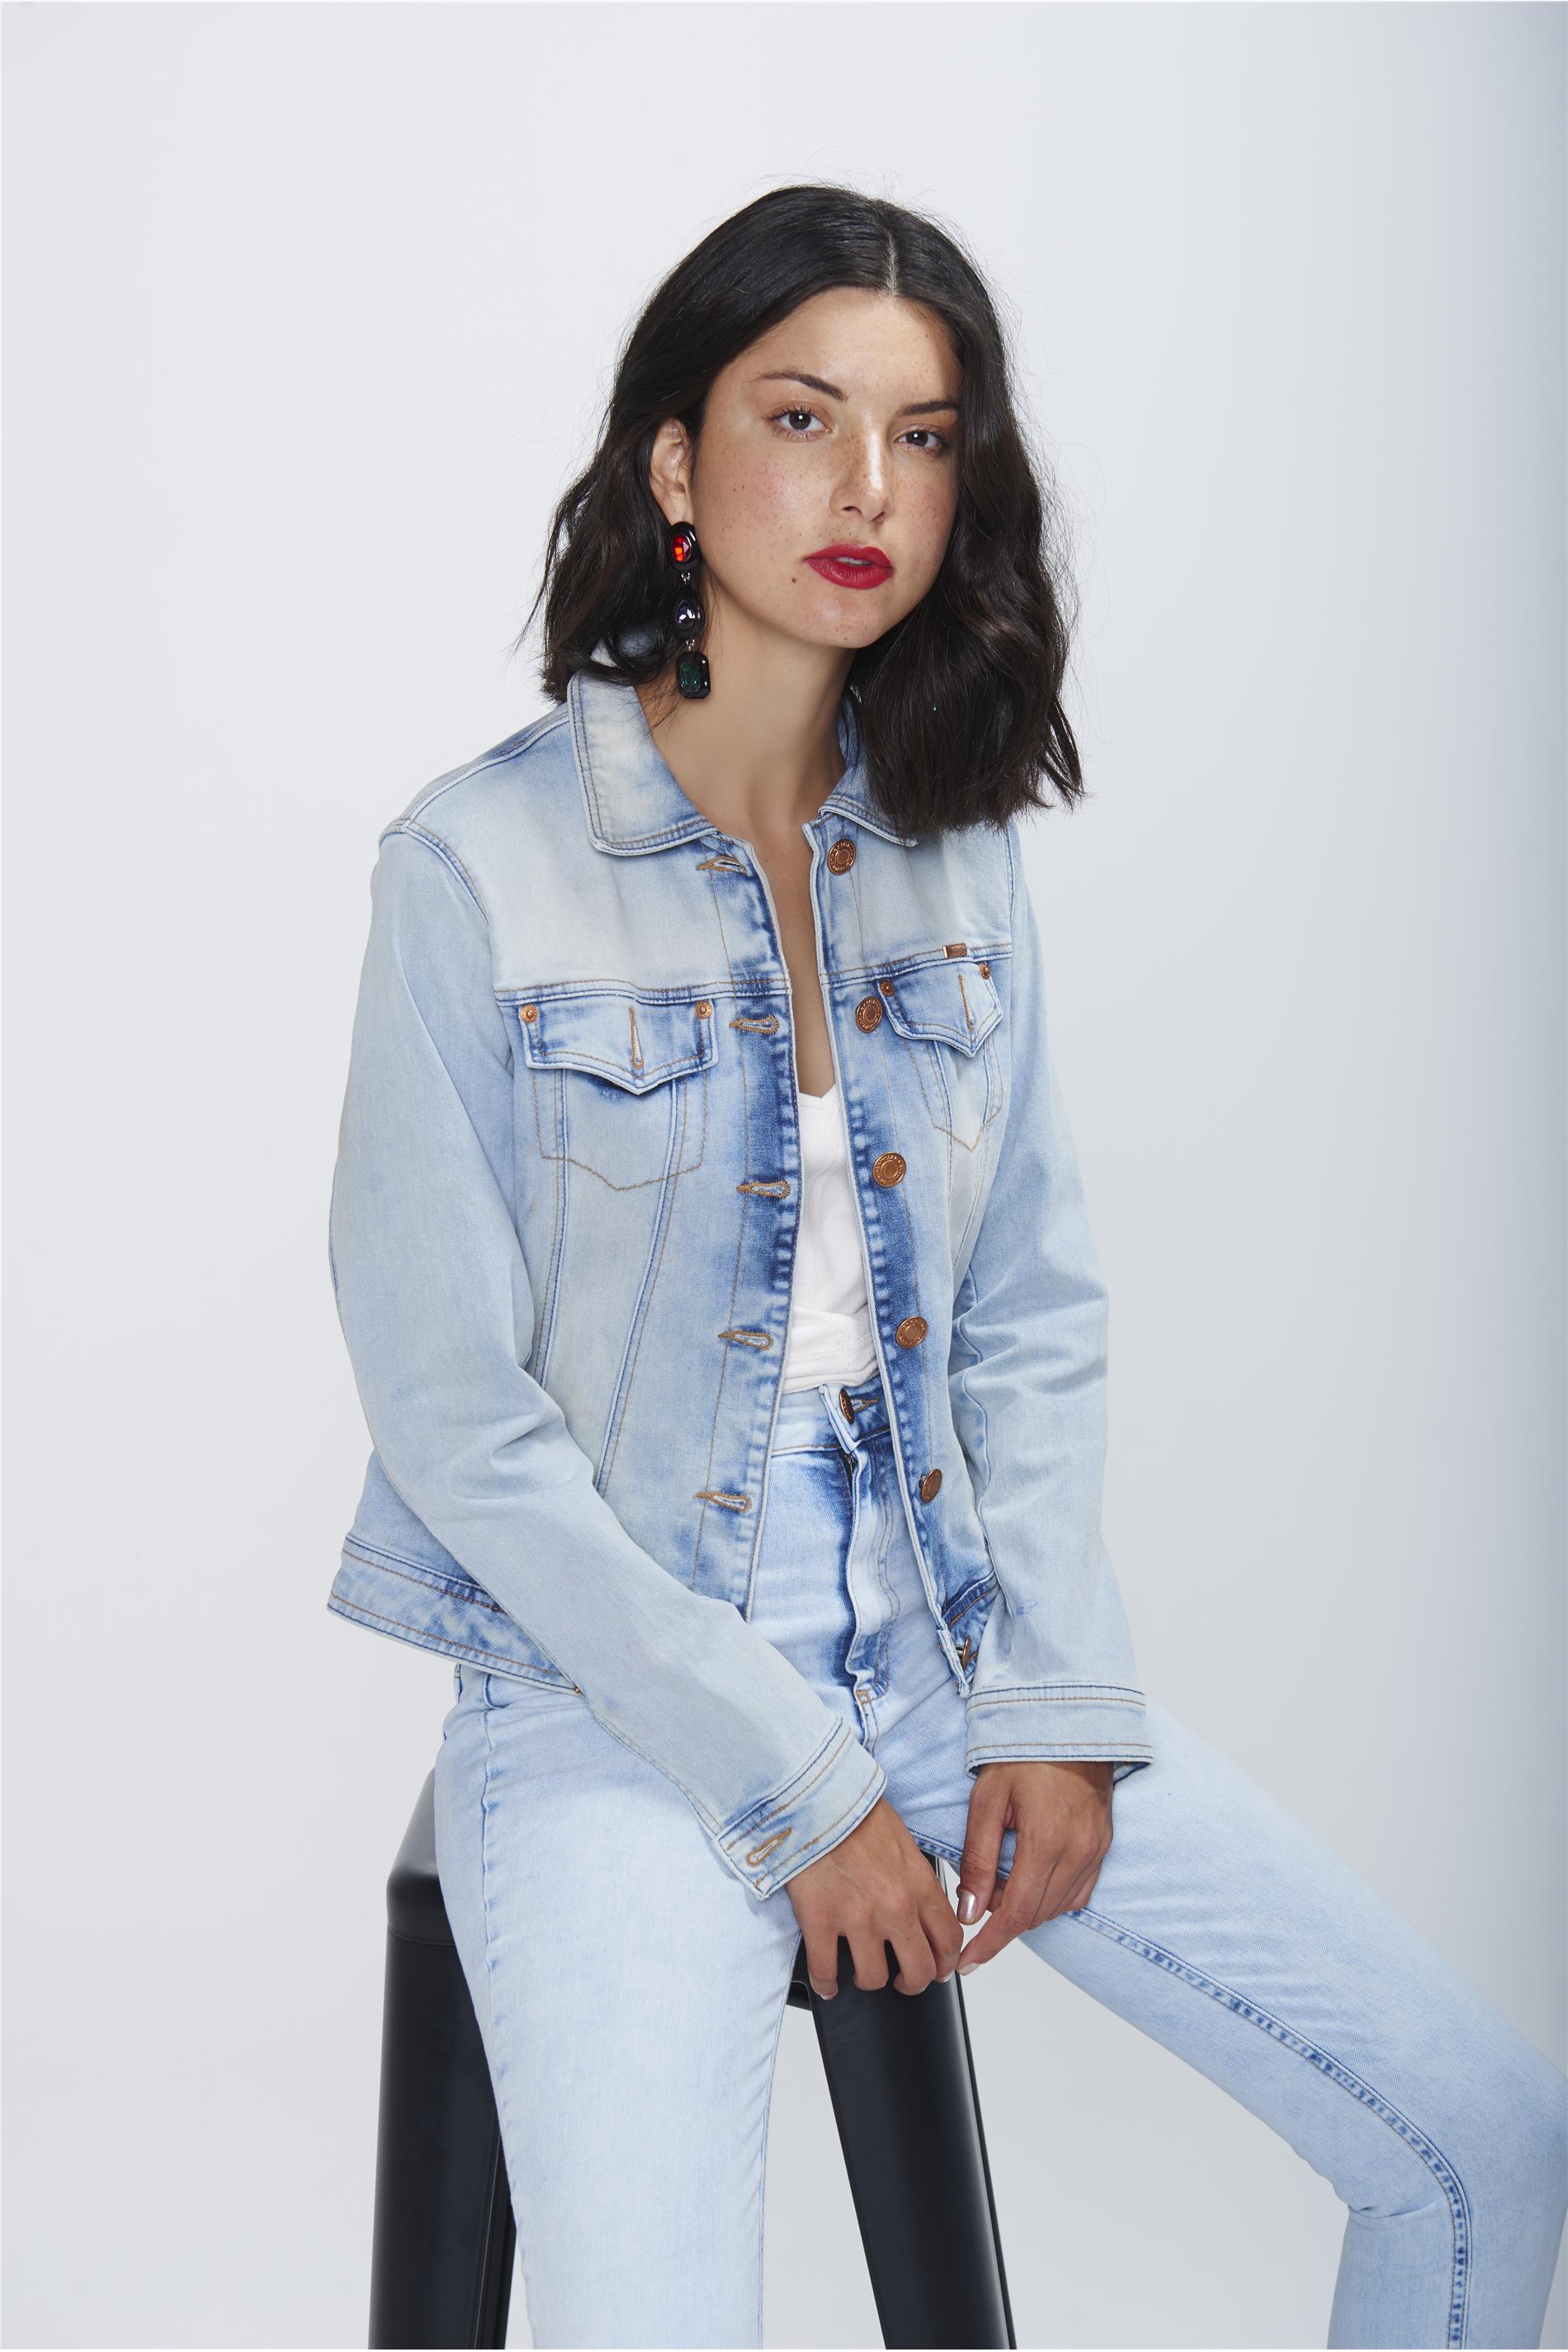 jaqueta jeans feminina de marca